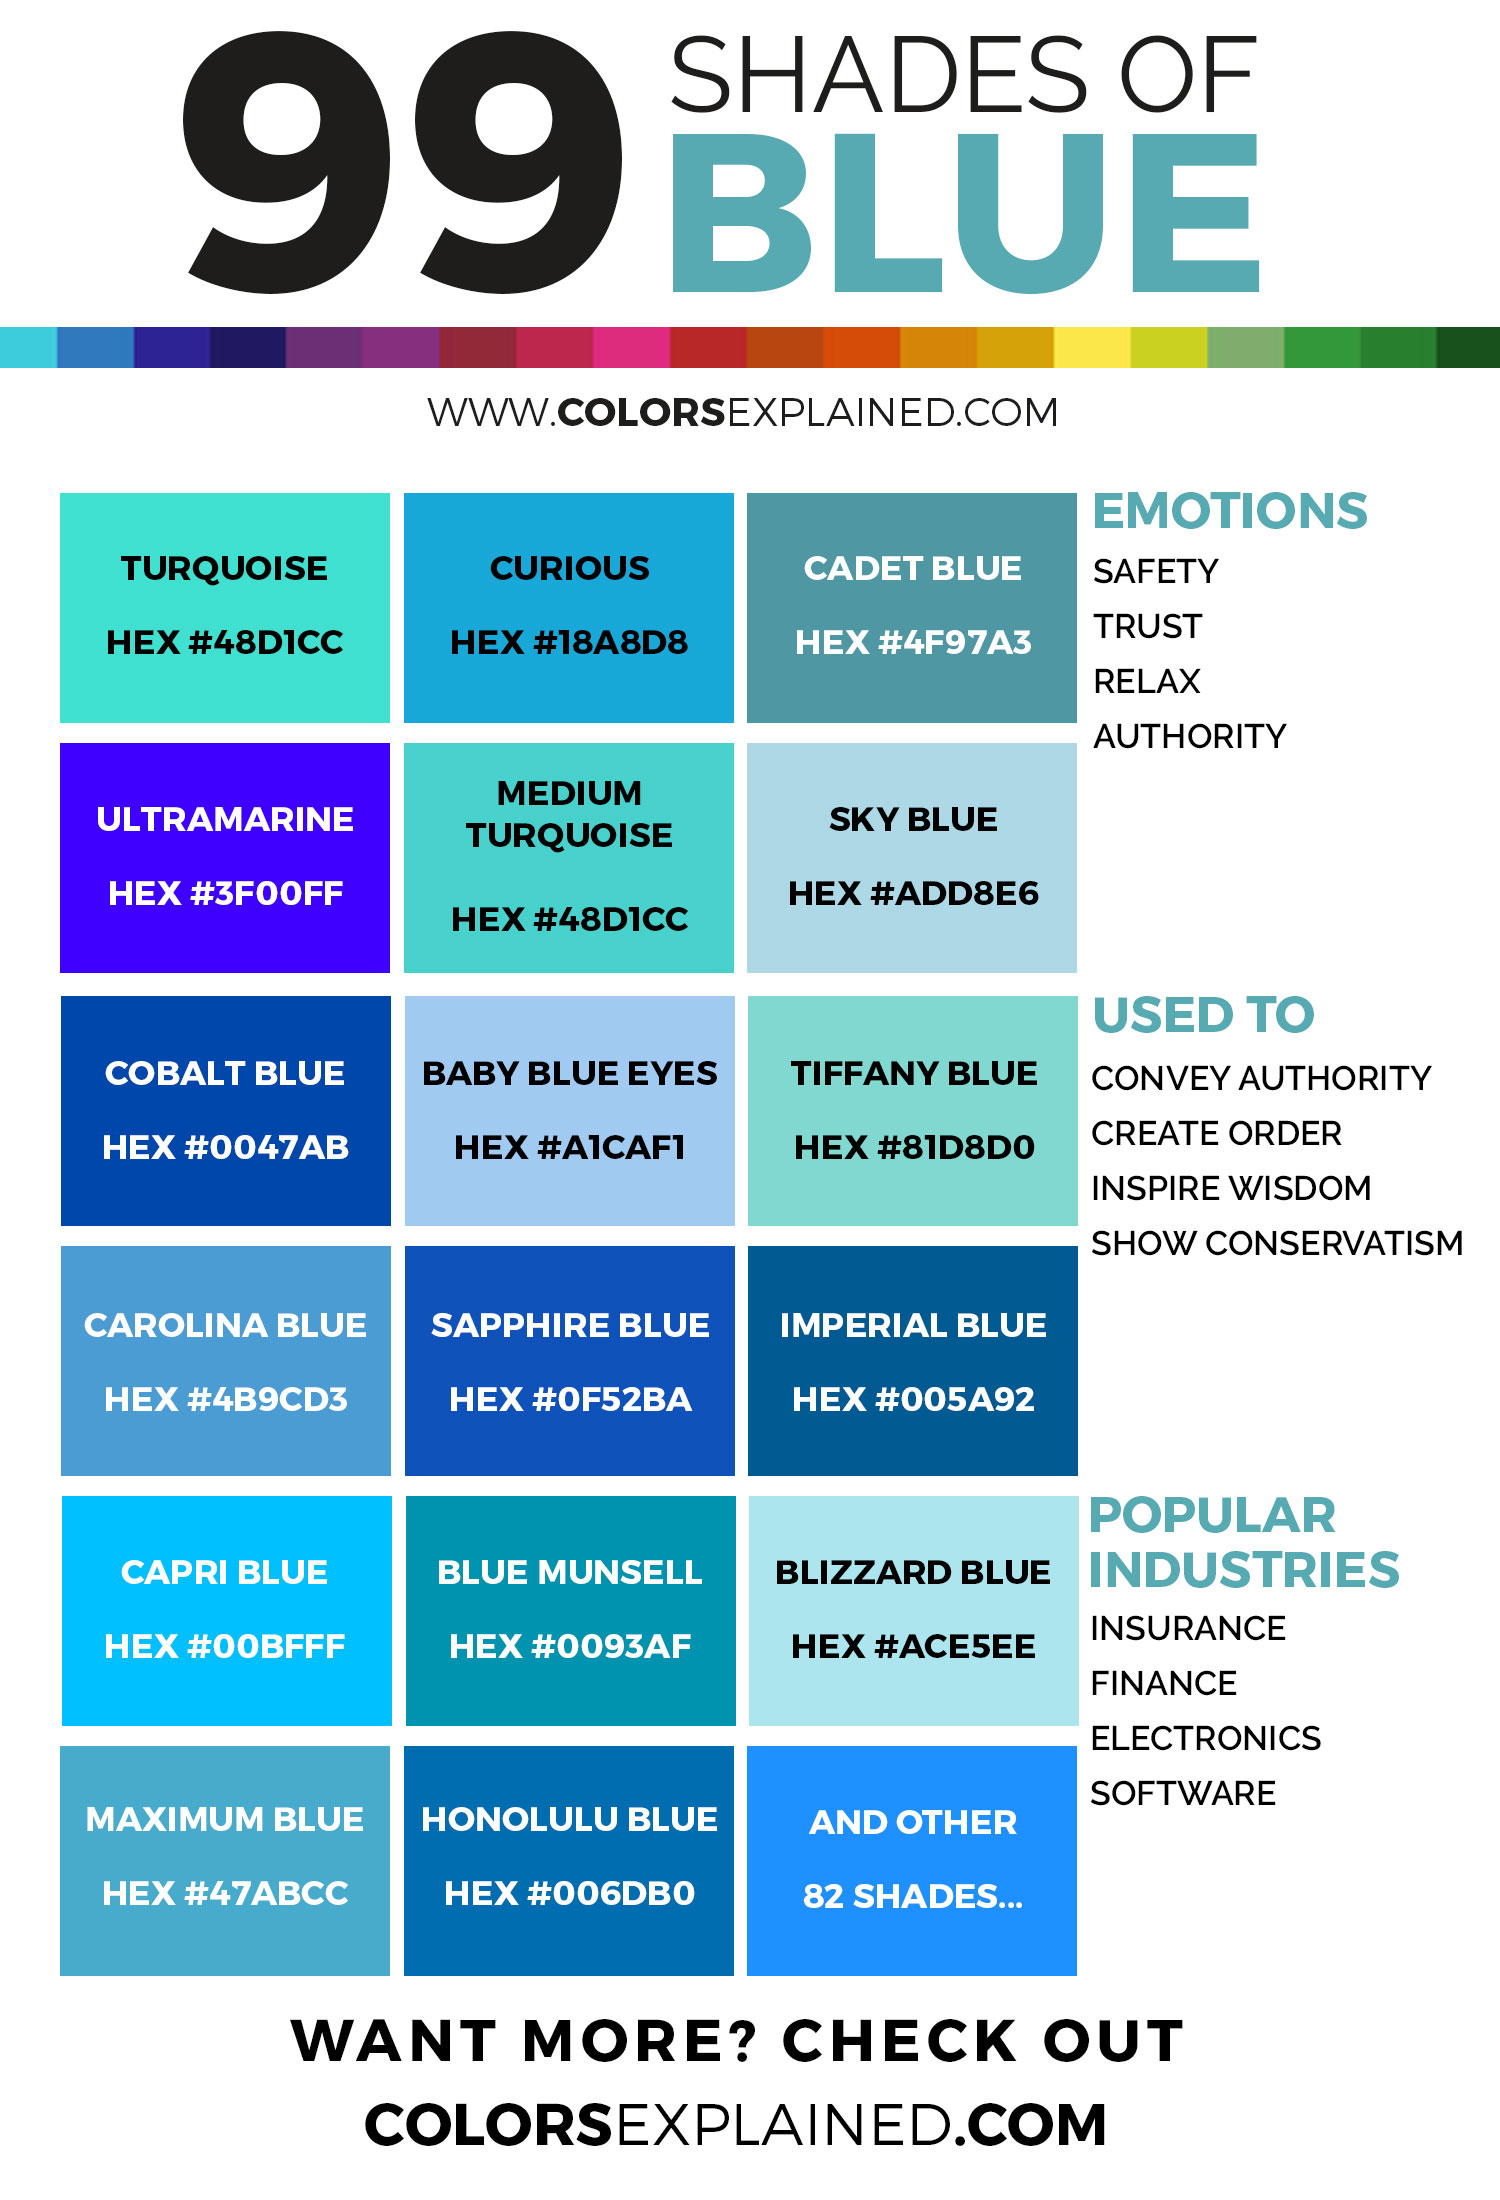 Оттенки синего, инфографика Бруны Вентуринелли 